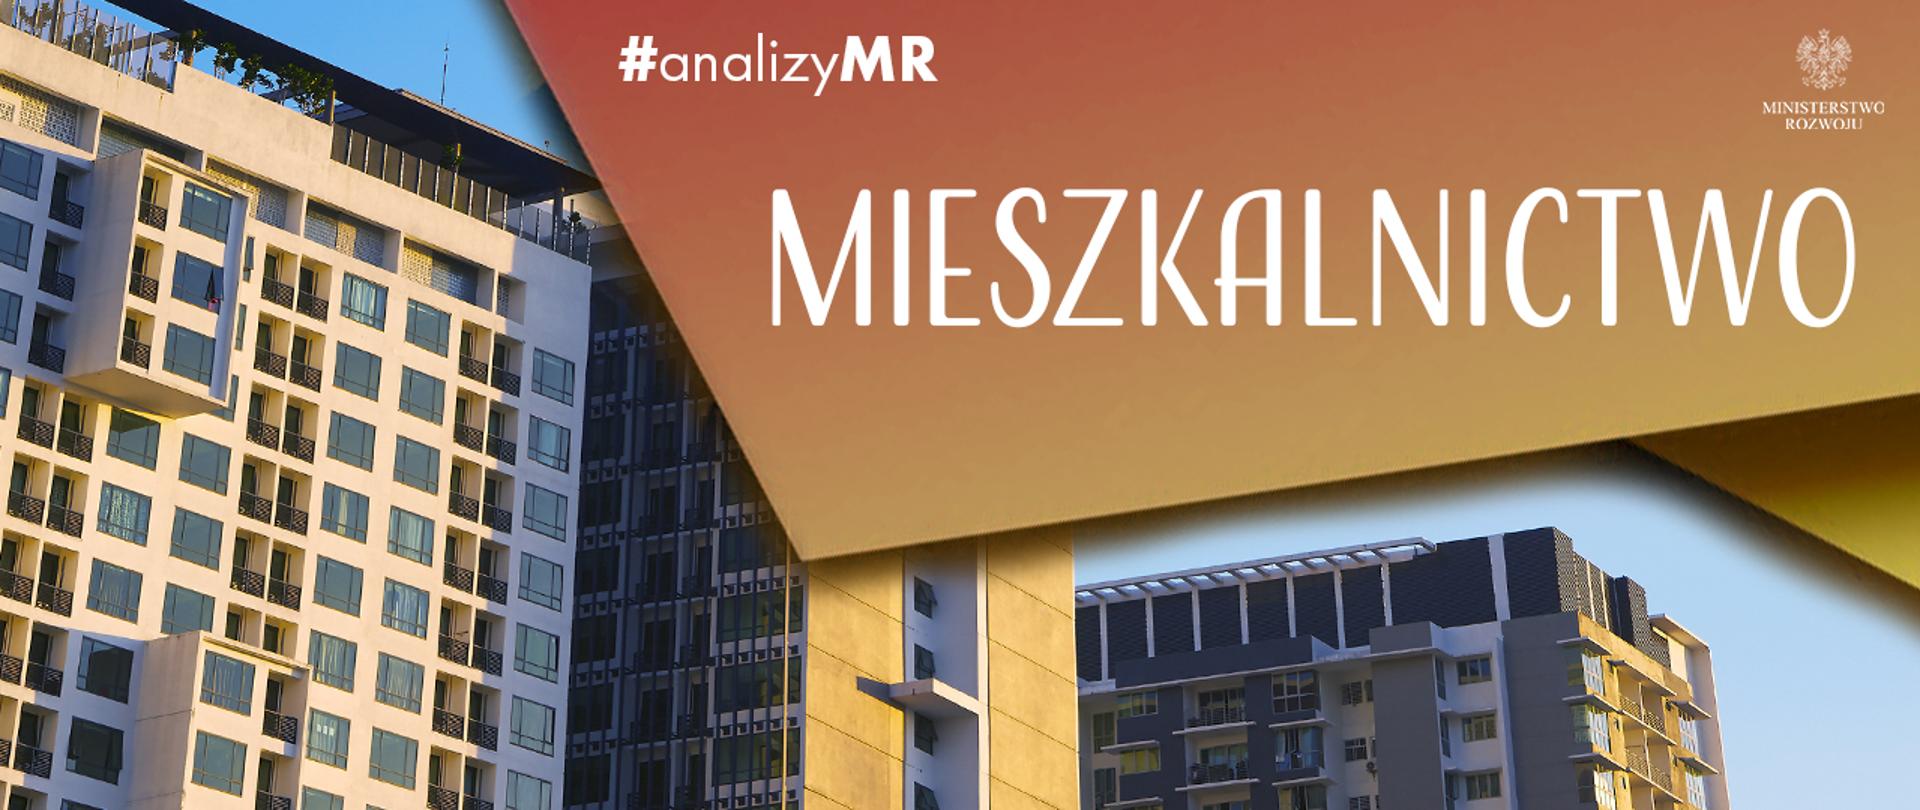 Napis #analizyMR - mieszkalnictwo. W tle zdjęcie bloku mieszkalnego.